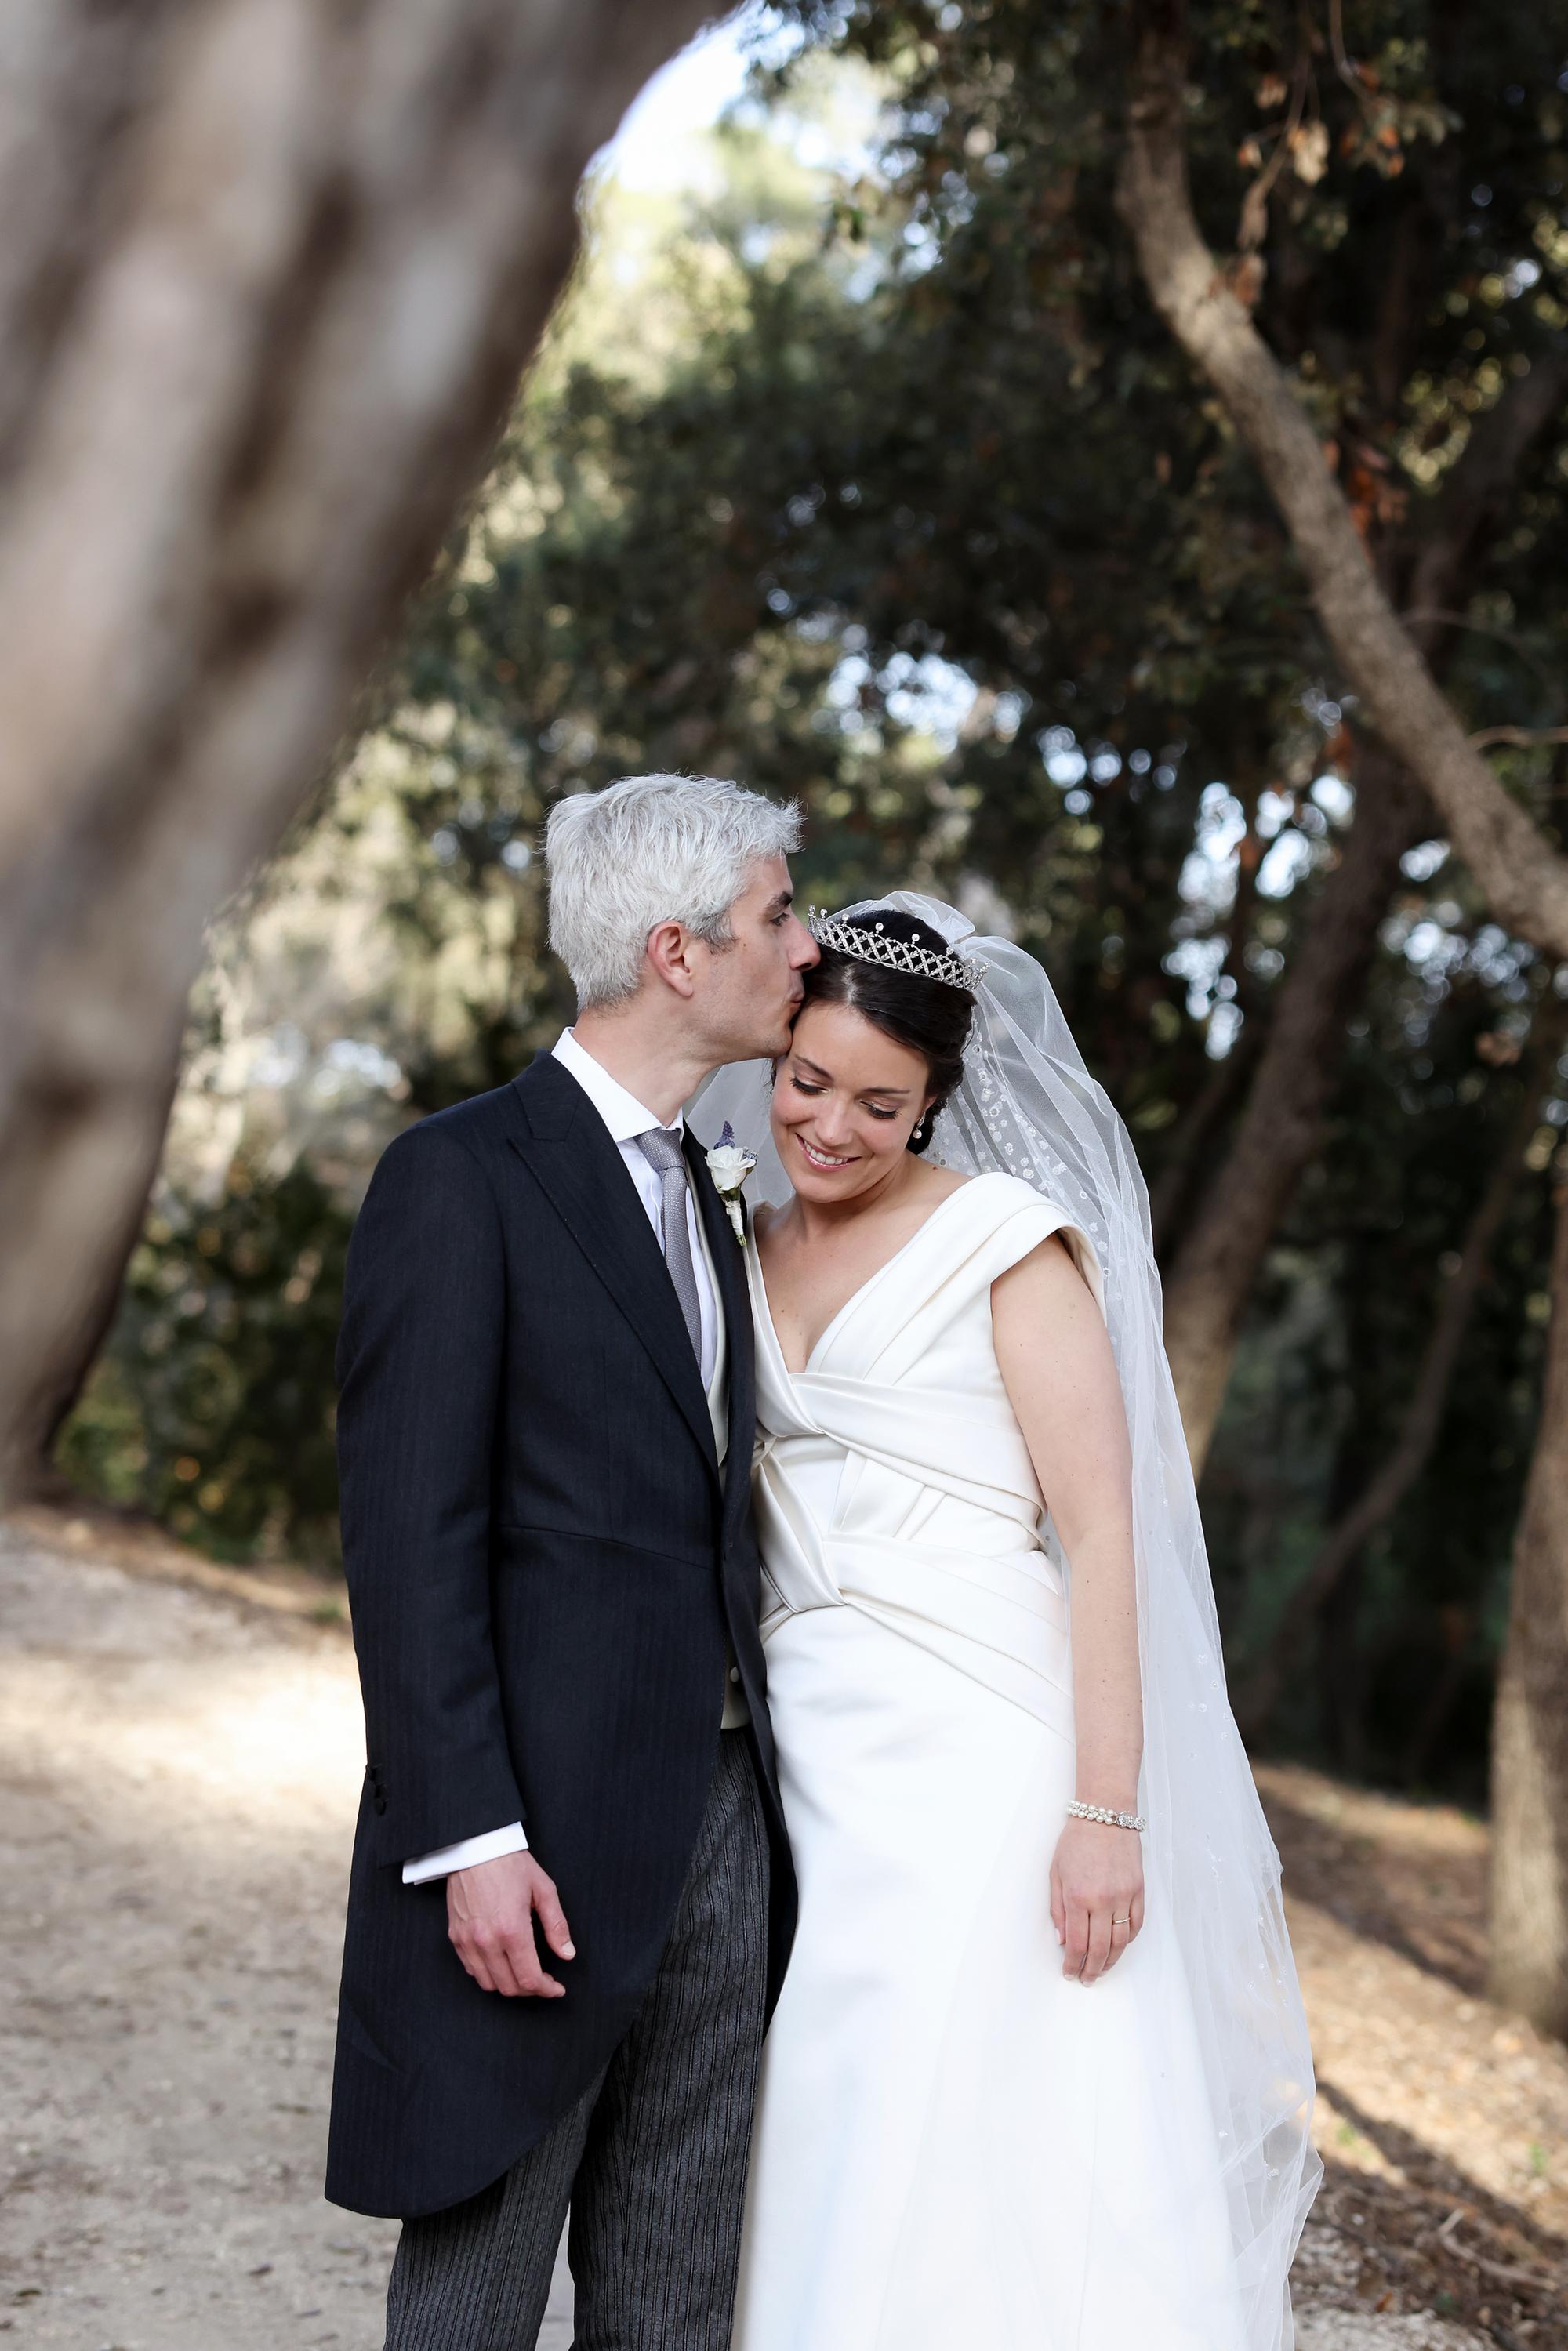 Auf ein Leben voller Liebe und Glück: Das Brautpaar posierte mit einer innigen Geste für die Fotografin.